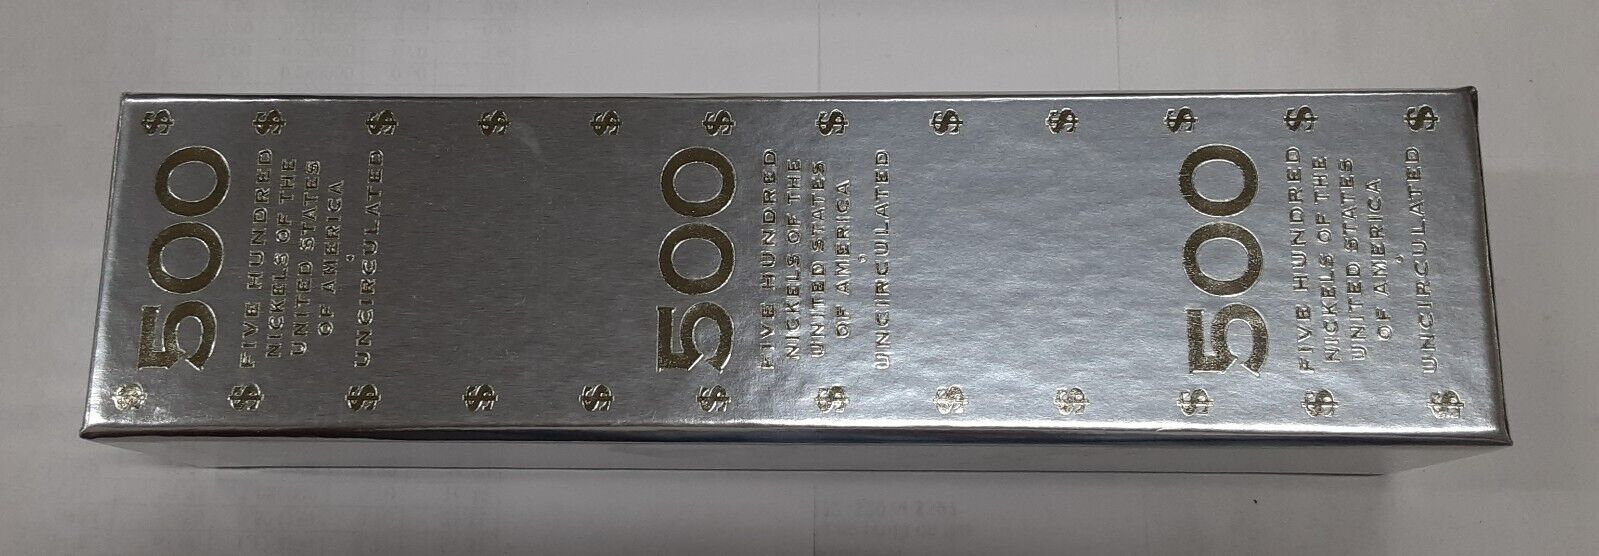 2005-D Jefferson Nickel BU Rolls Bison -Twenty 25 Coin Rolls/500 Coins in Box